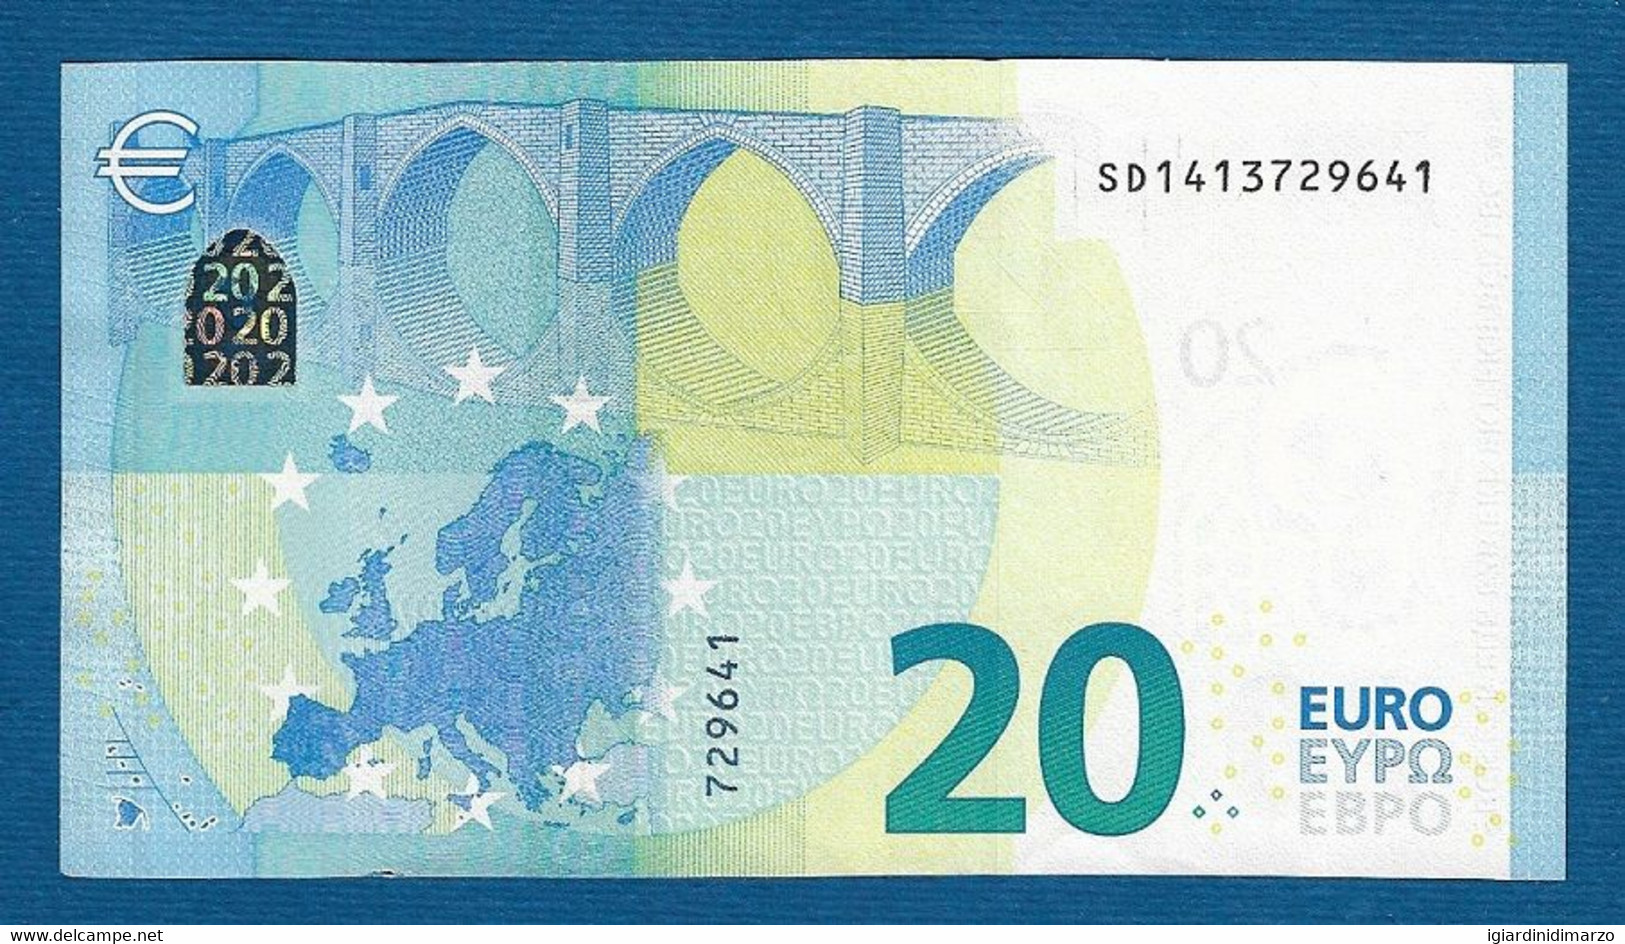 EURO - ITALIA - 2015 - BANCONOTA DA 20 EURO DRAGHI SERIE SD (S019A3) - NON CIRCOLATA (FDS-UNC) - IN OTTIME CONDIZIONI. - 20 Euro